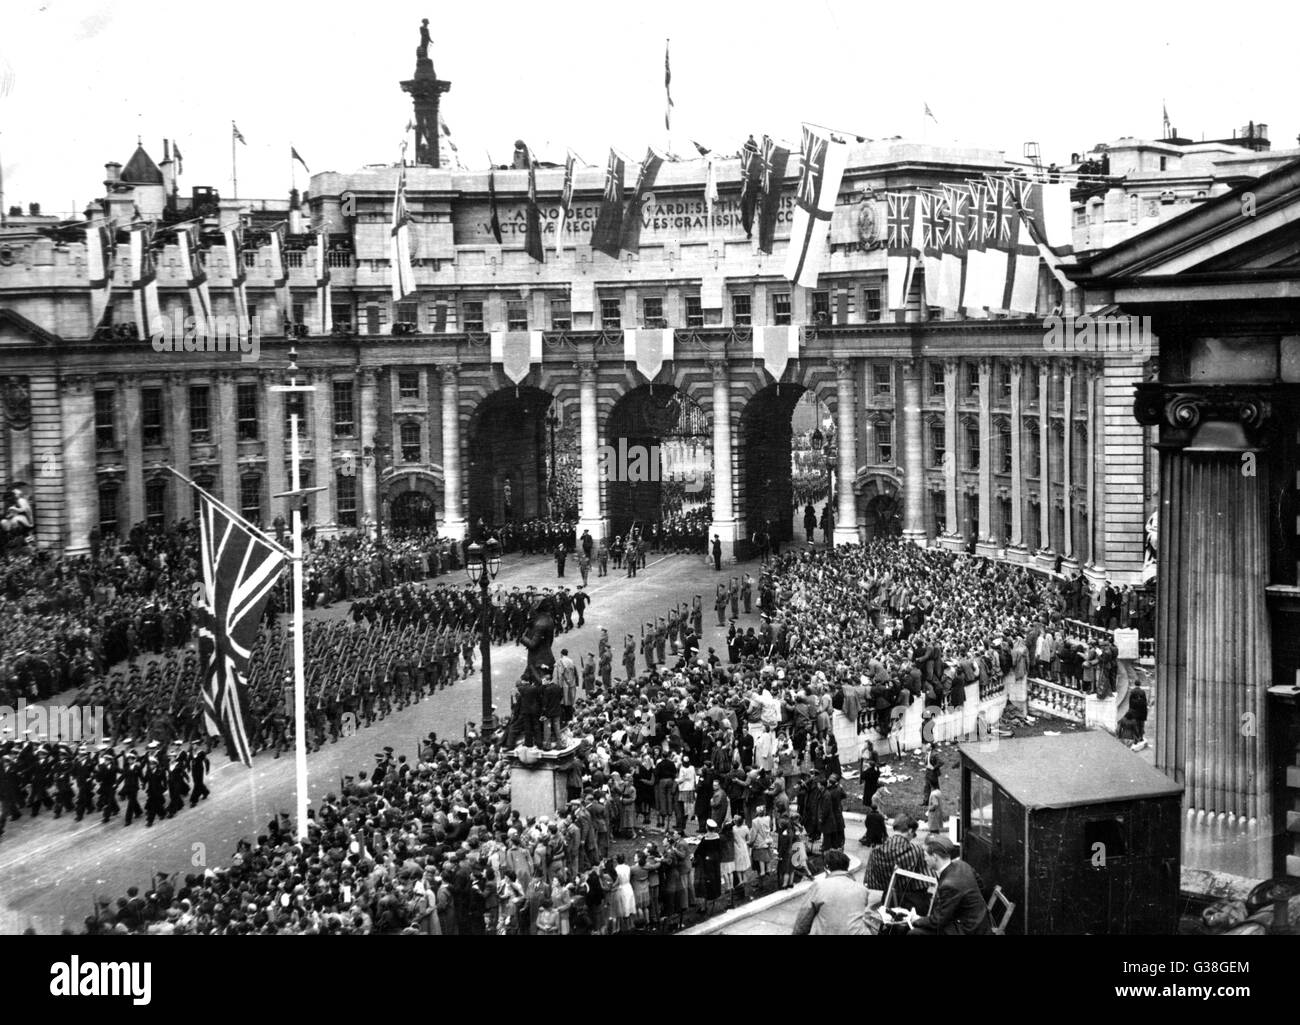 La revue de la Victoire : le contingent australien passe le long de la galerie marchande à l'Admiralty Arch. Date : 8 juin 1946 Banque D'Images